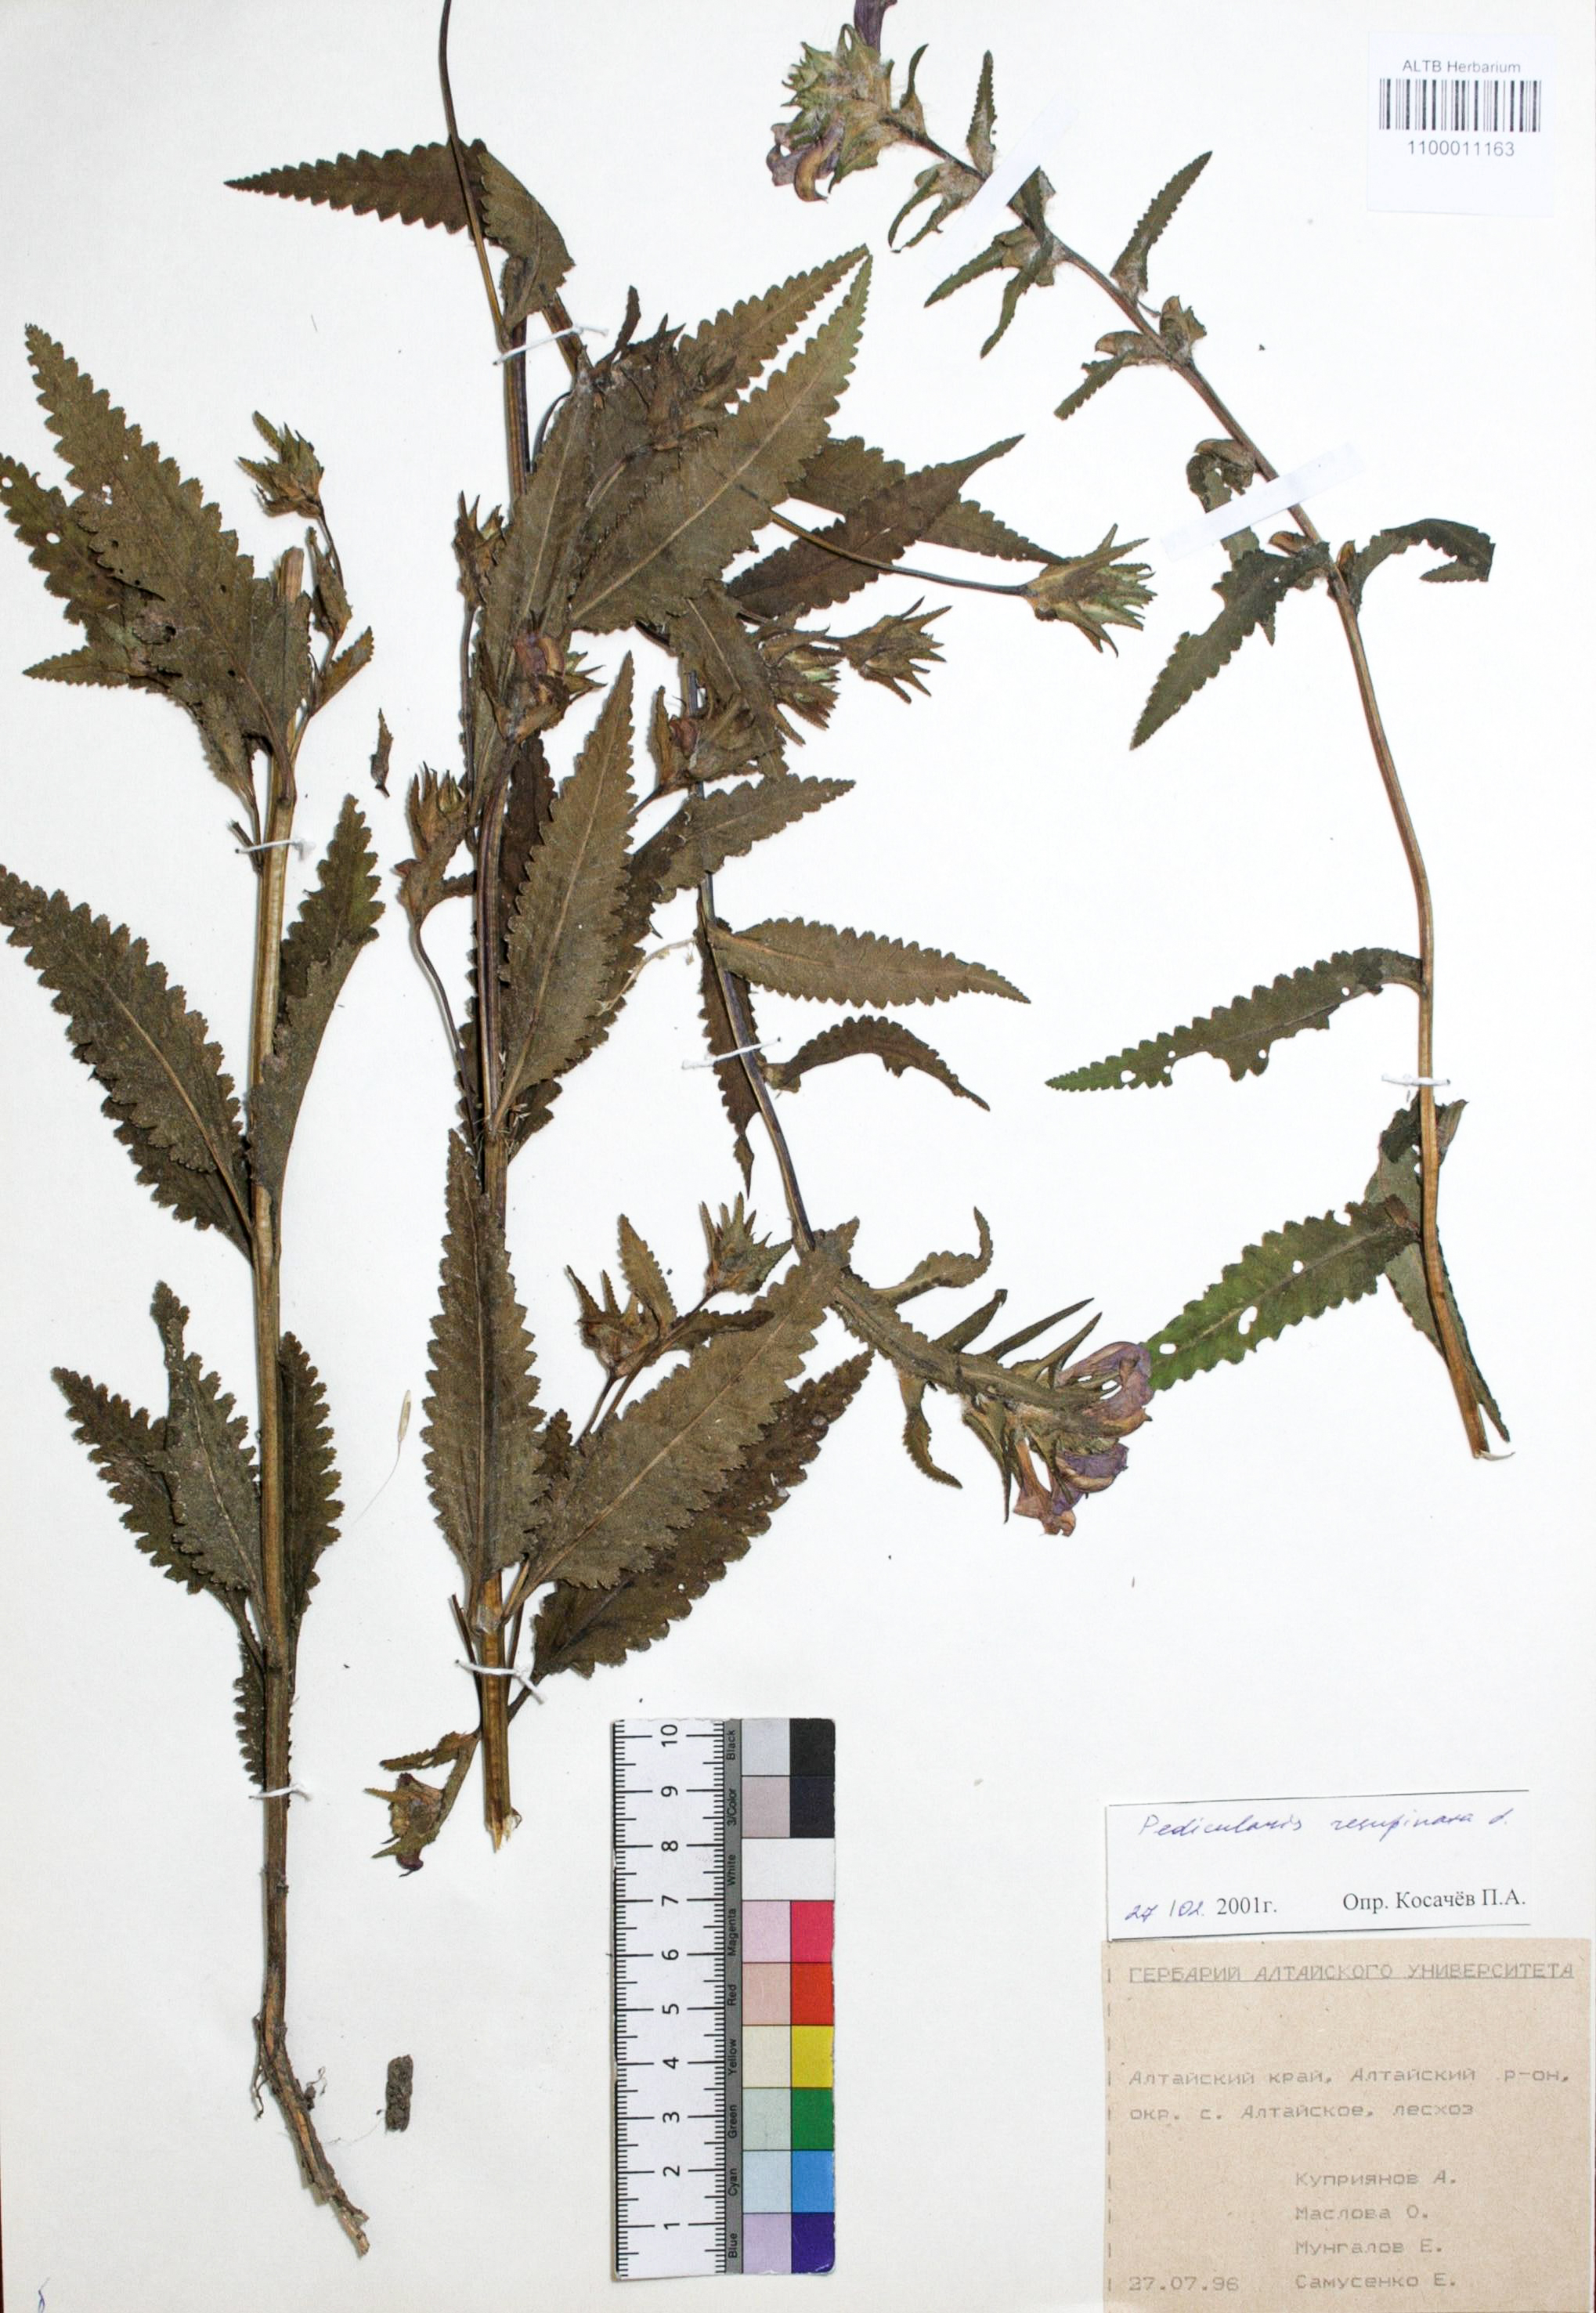 Pedicularis resupinata L.